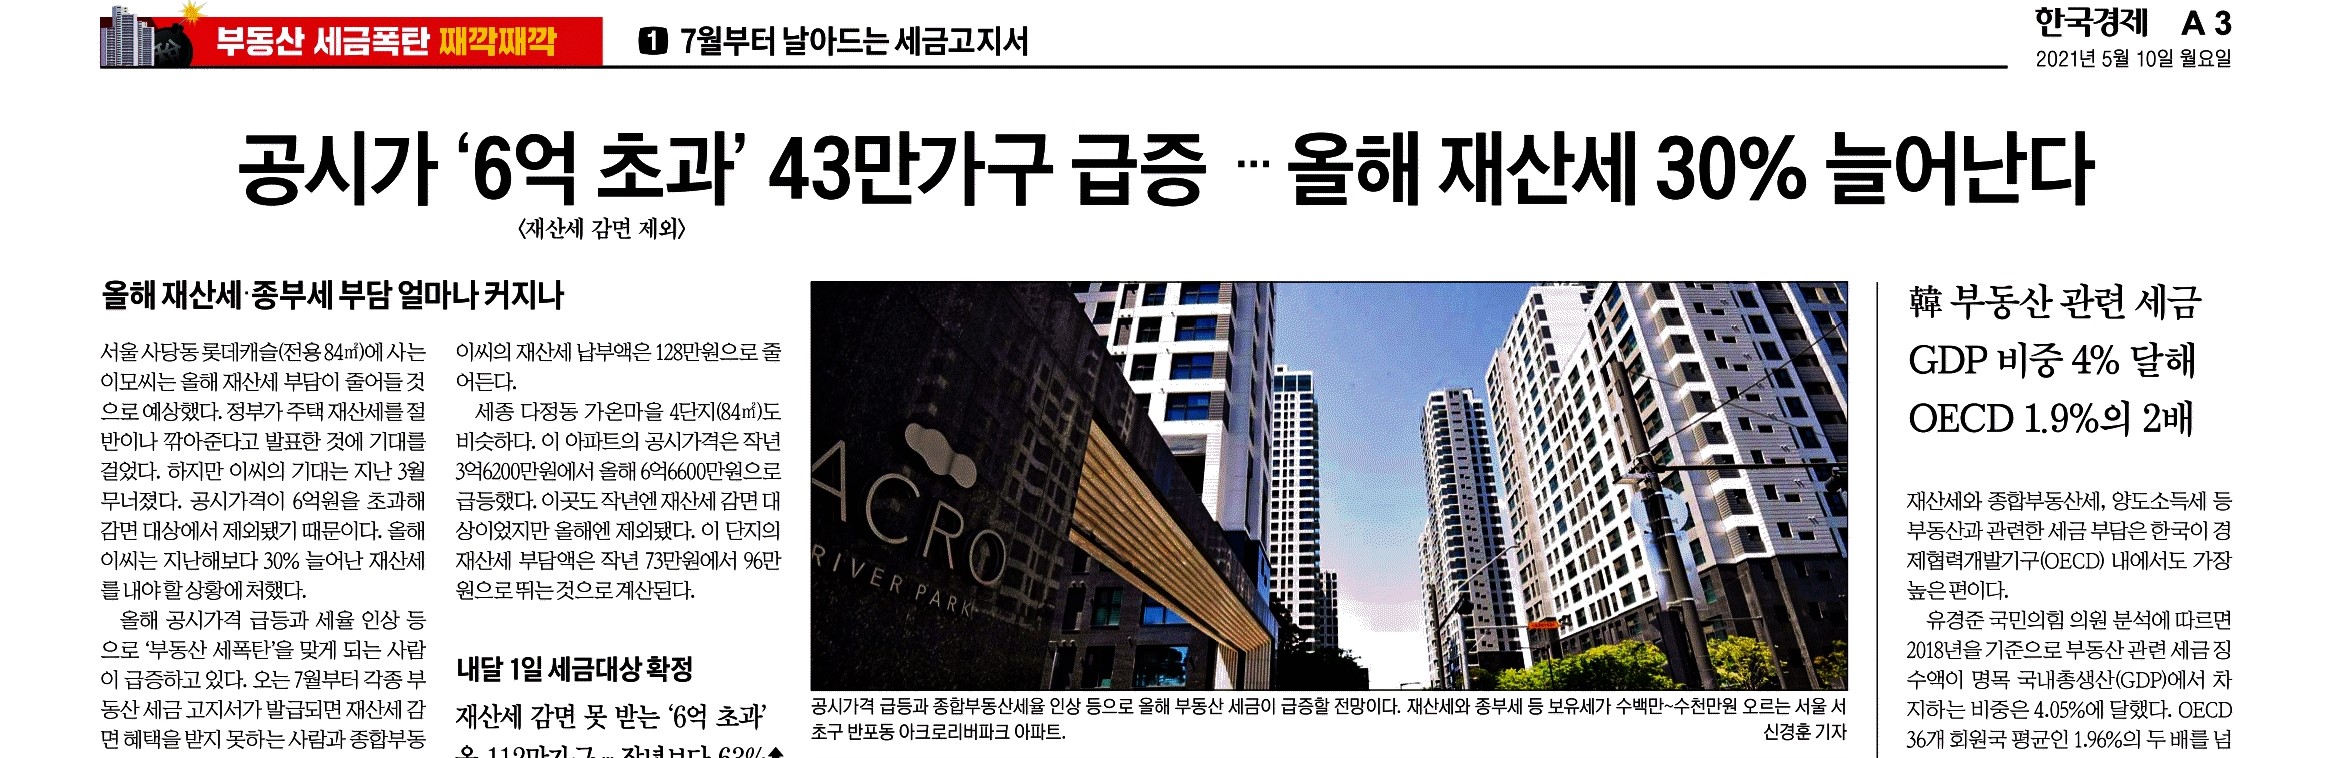 한국경제_기사 제목을 입력하세요_2021-05-10.jpg